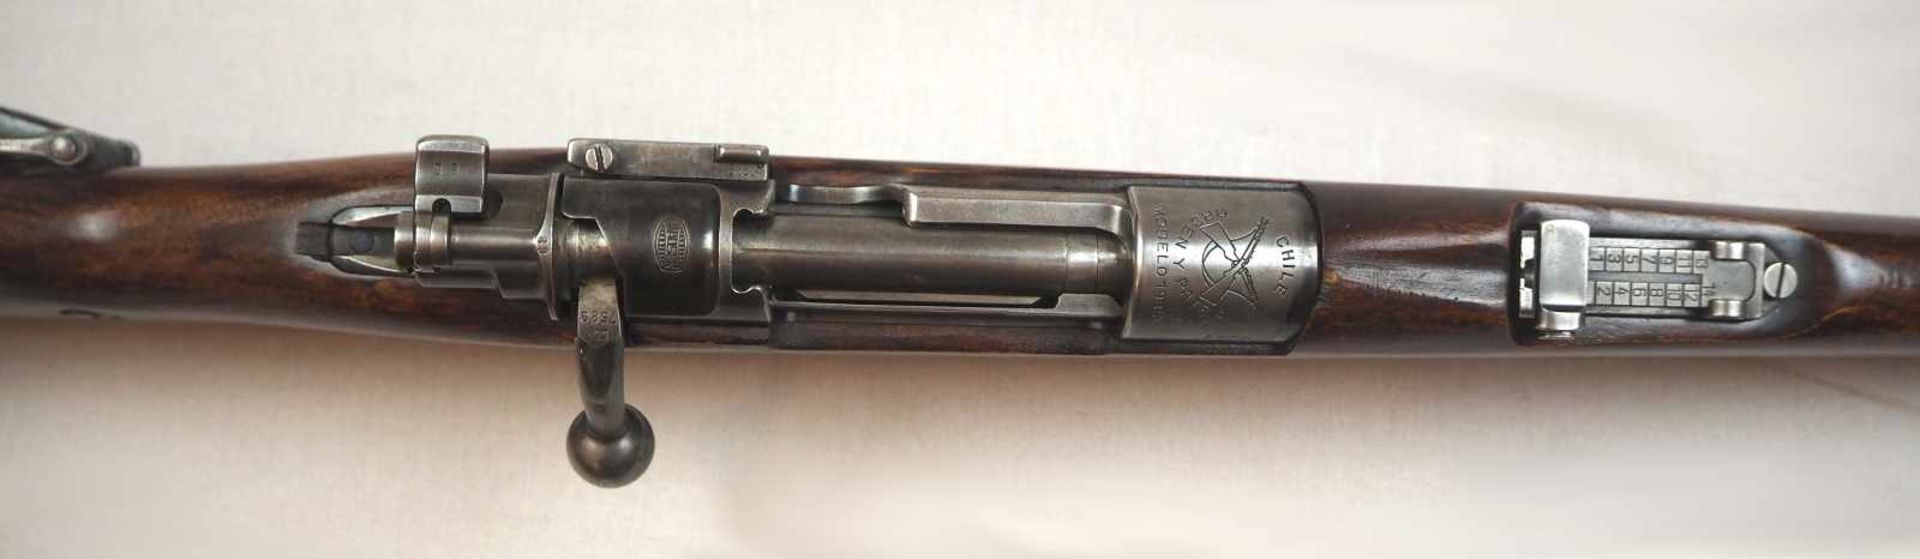 1 Repetiergewehr MAUSERauf Schaft bez. "Chile Orden Y Patria Modelo 1935" Holzschaft L ca. 106cm - Bild 2 aus 2